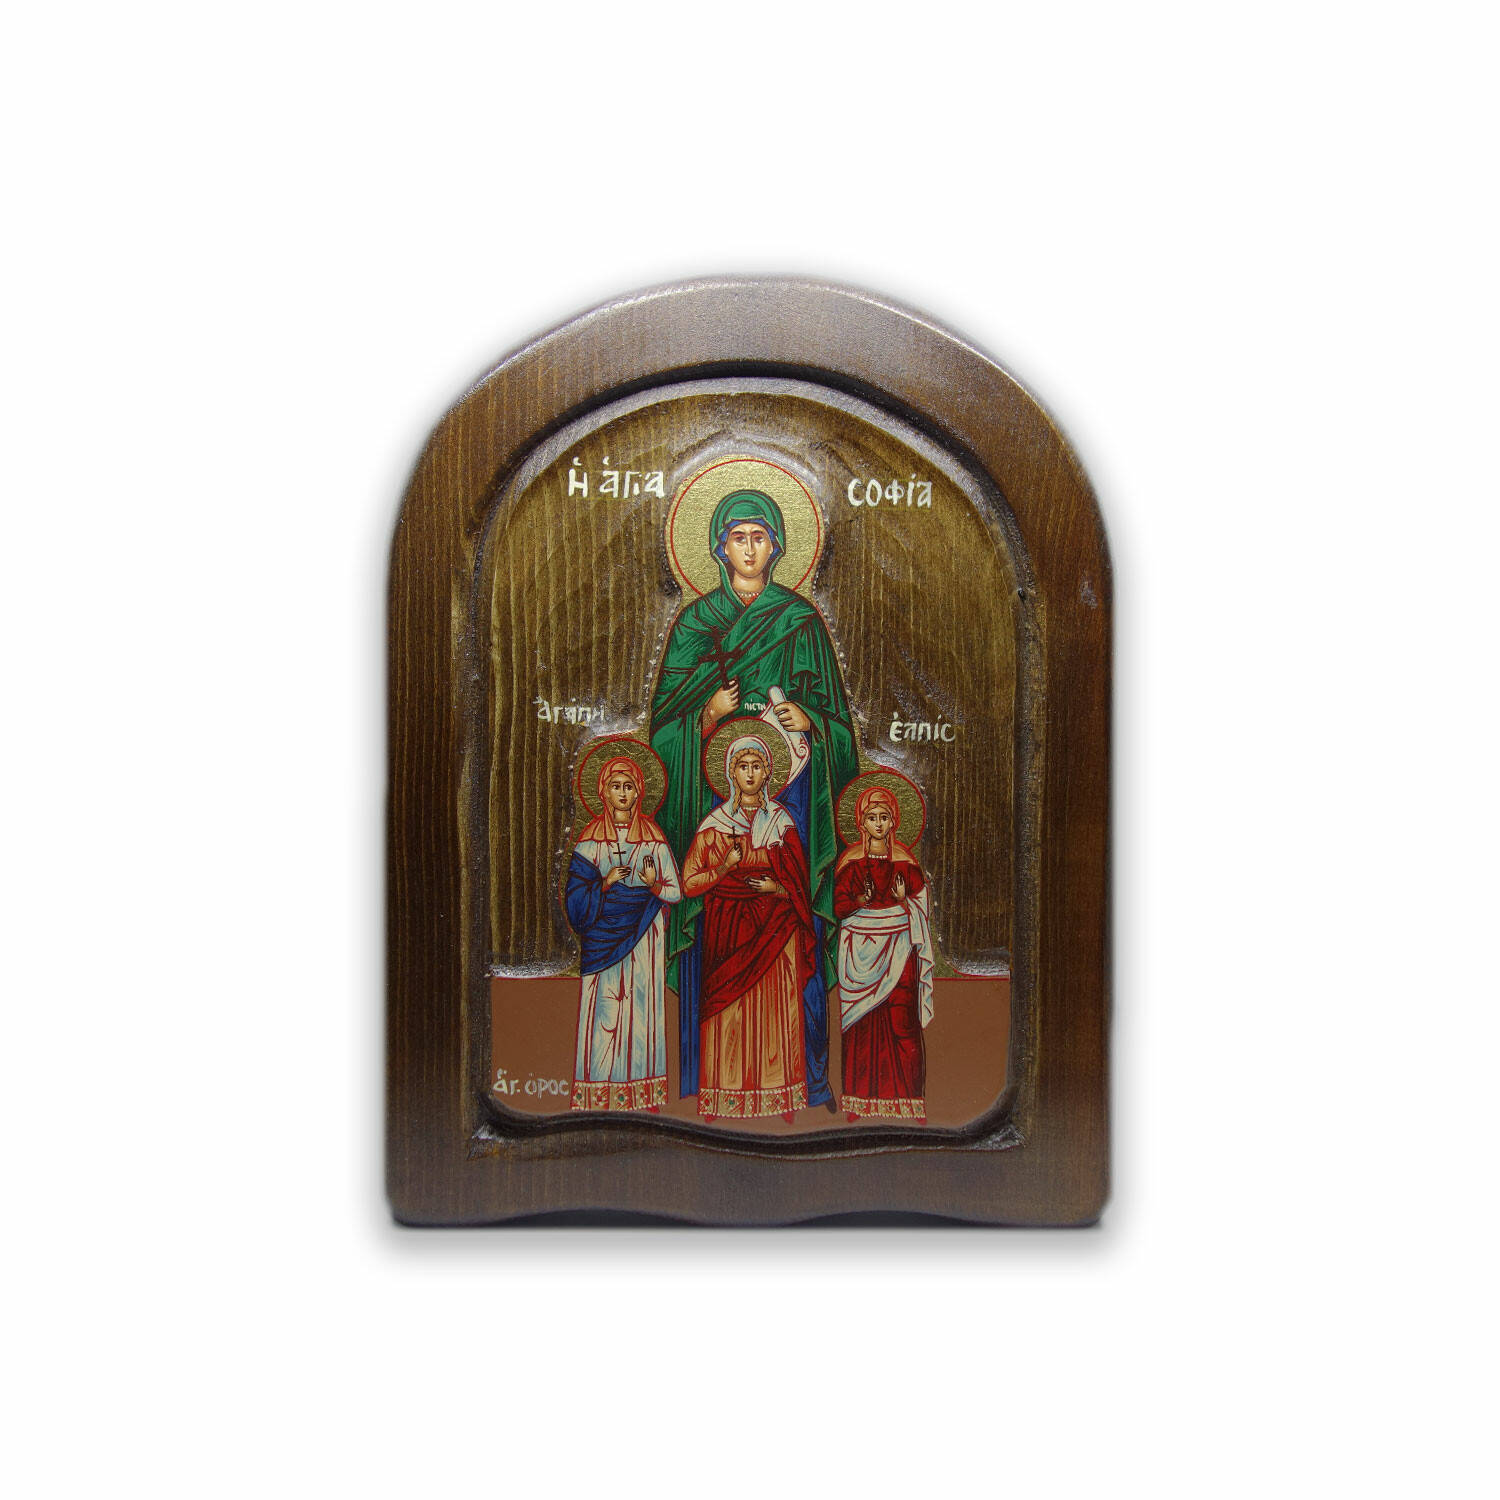 Saint Sophia, Agape, Pisti, Elpida